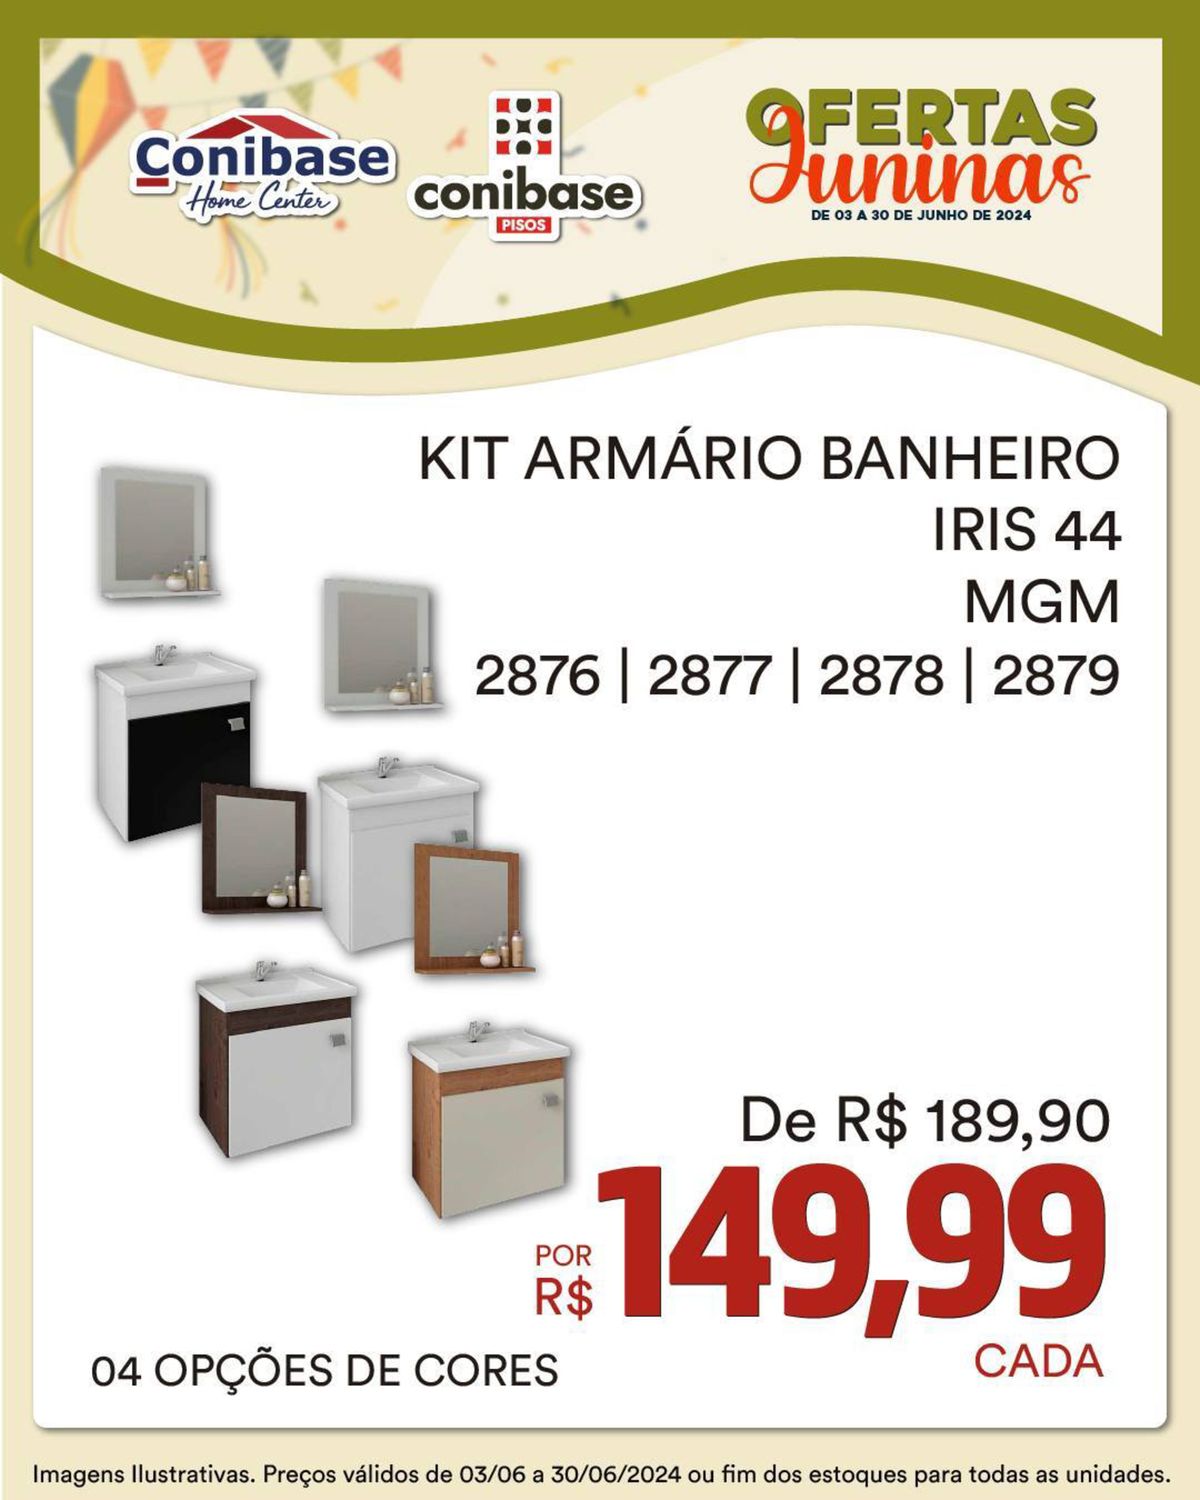 Kit Armário Banheiro Iris 44 MGM - Economize R$39,91 por unidade